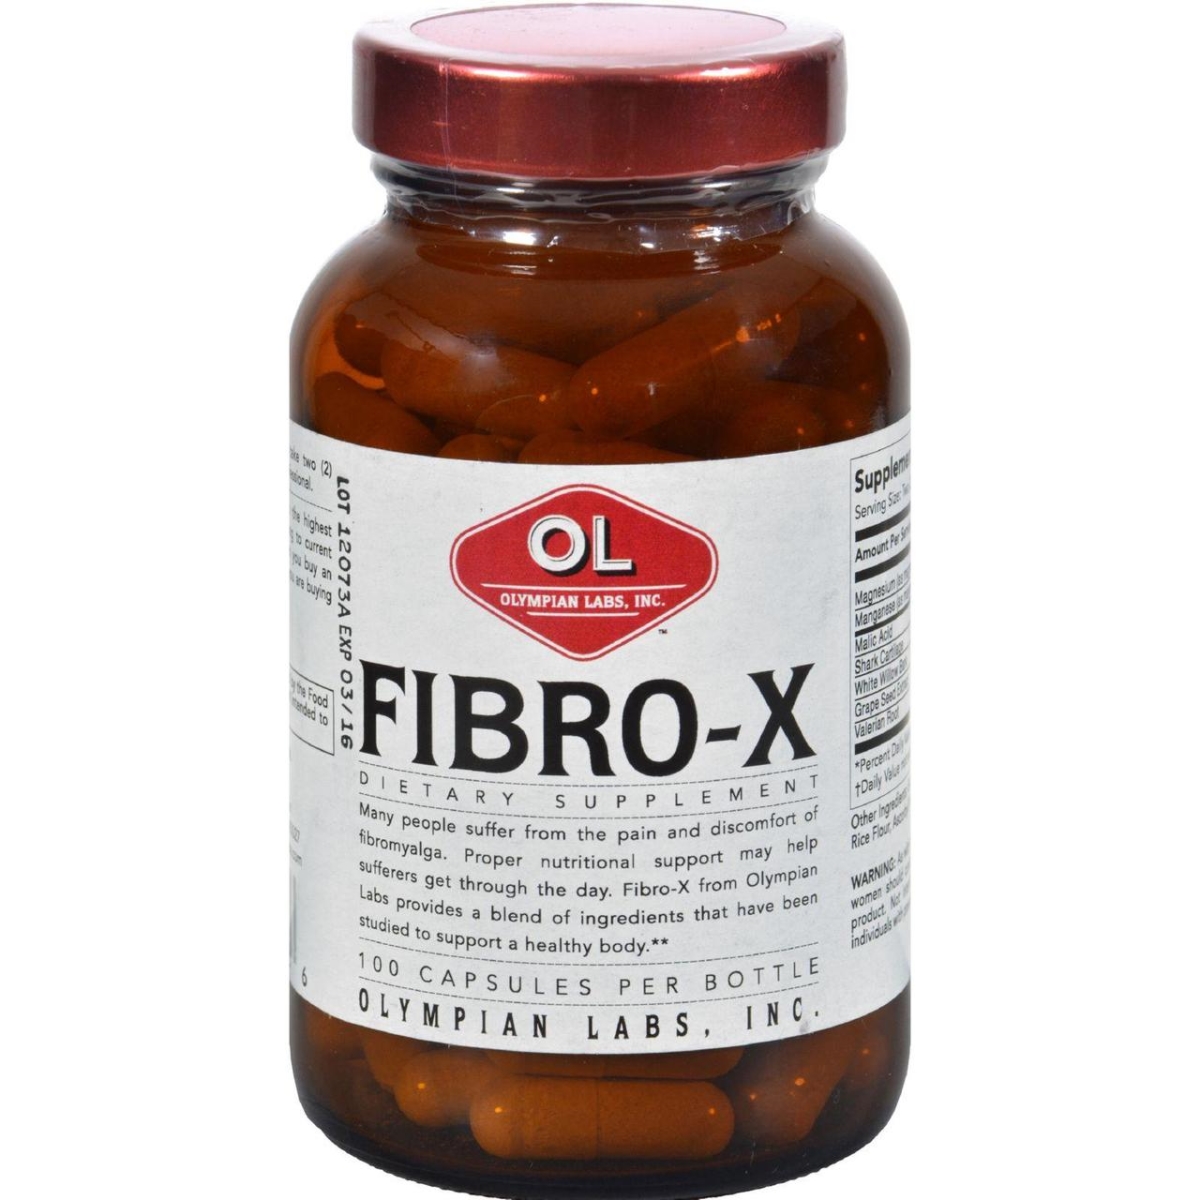 Hg0381483 Fibro-x - 100 Capsules